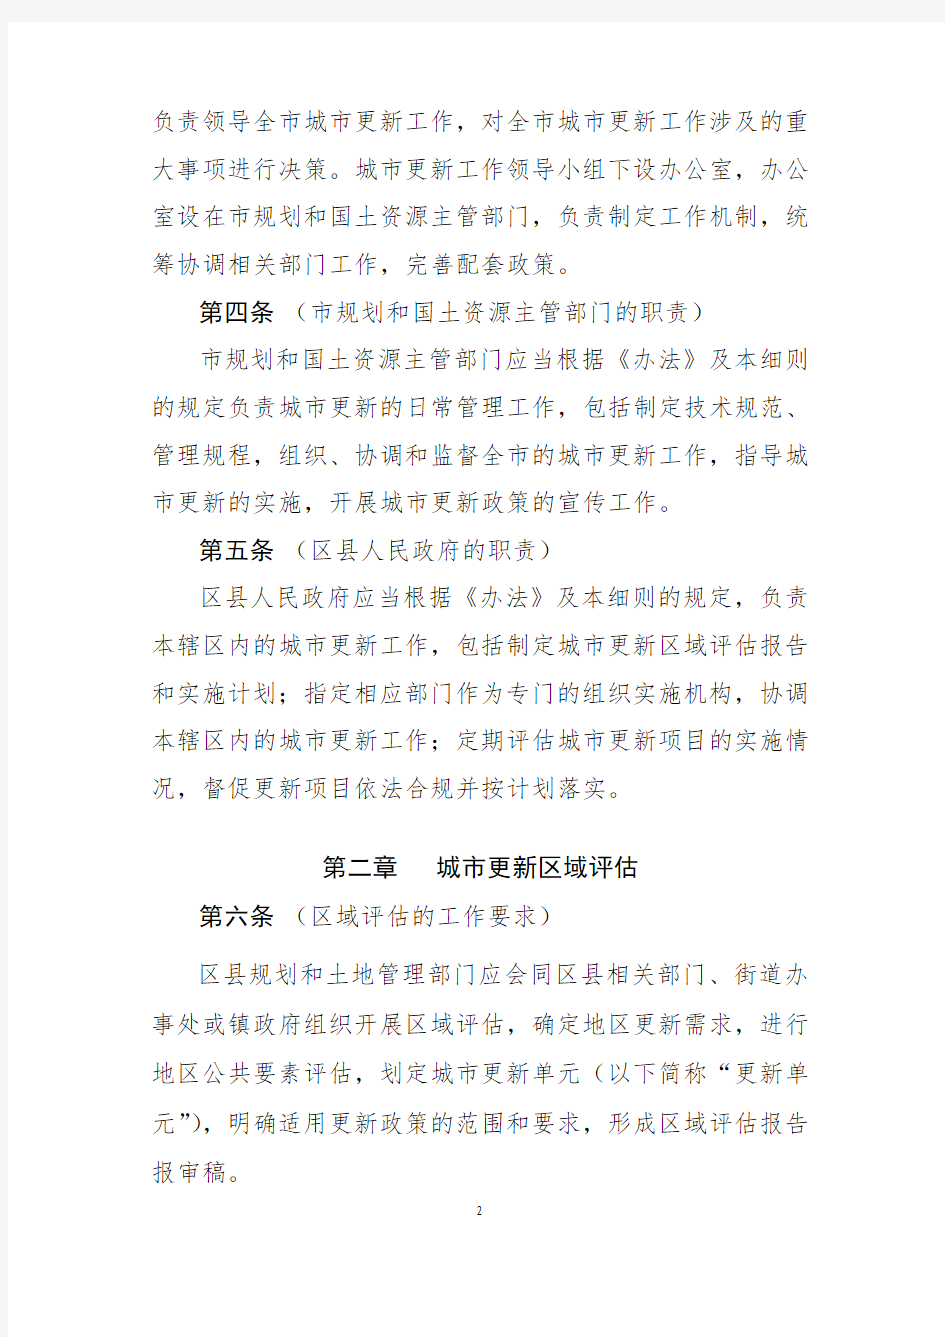 上海城市更新实施细则(试行)2015